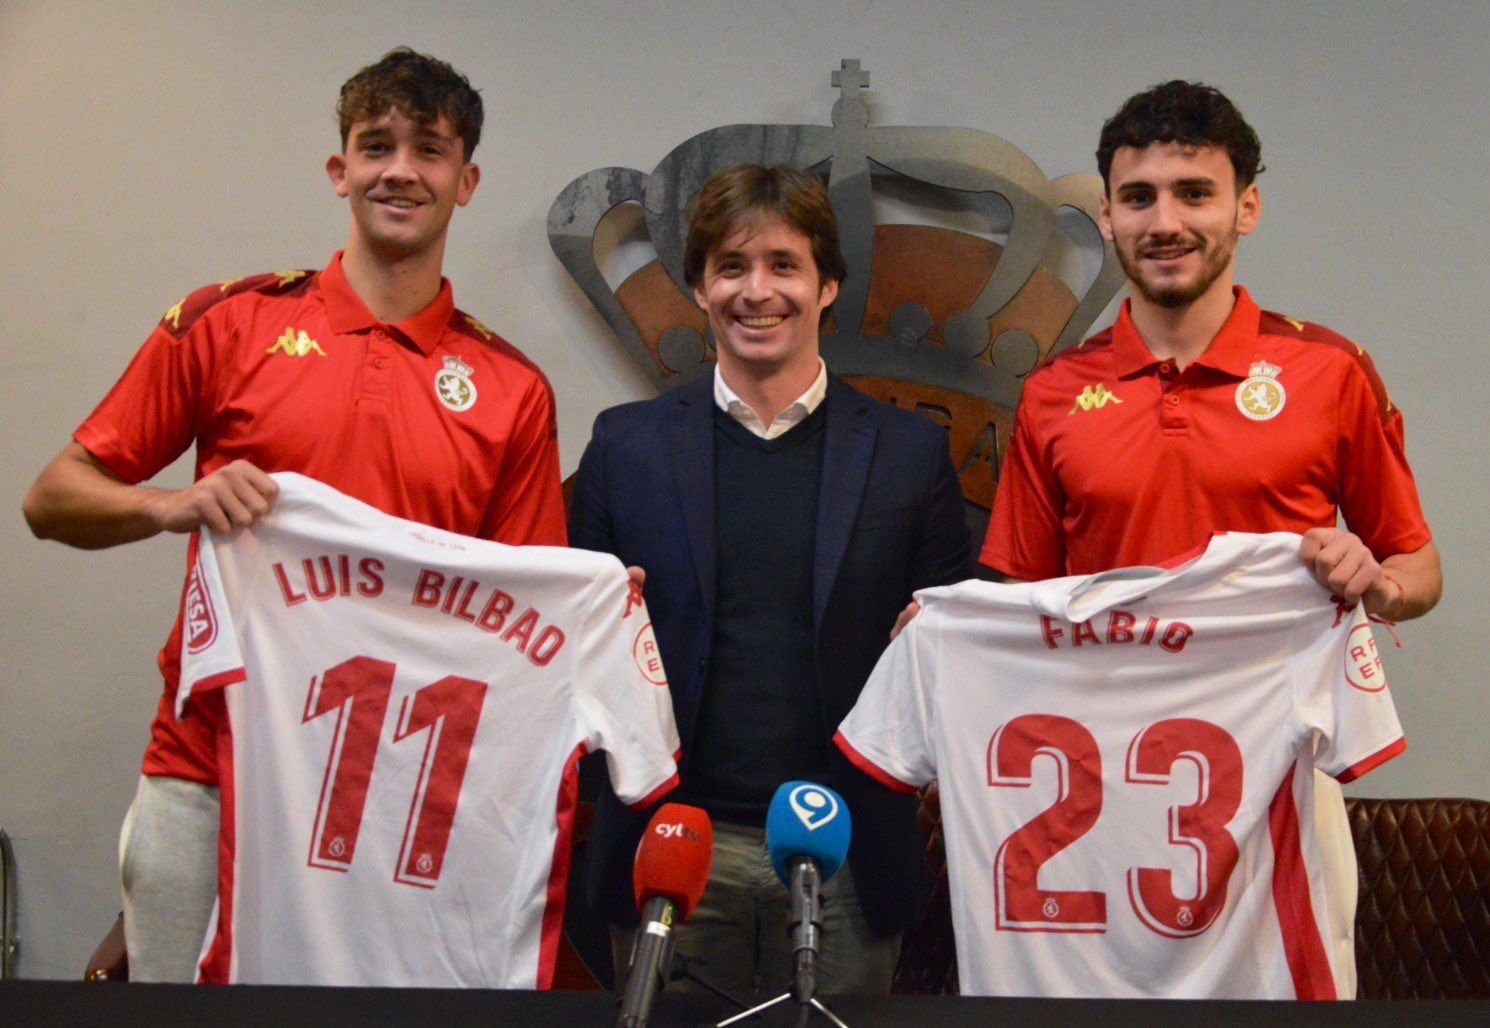 Luis Bilbao, José Manzanera y Fabio Blanco posando con sus nuevos dorsales | CYDL